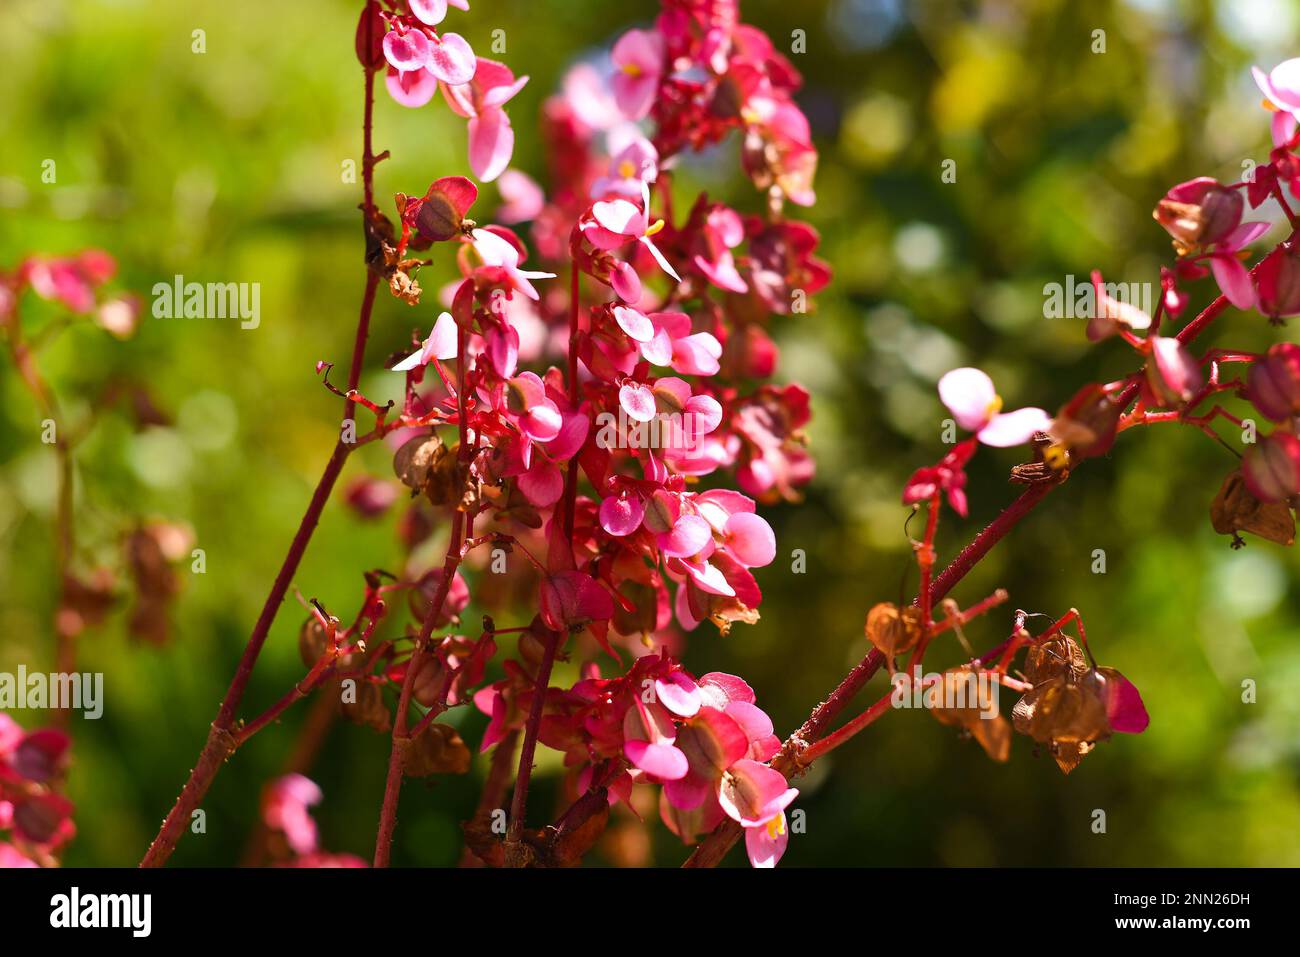 Begonia grandis flowers growing in Vietnam Stock Photo